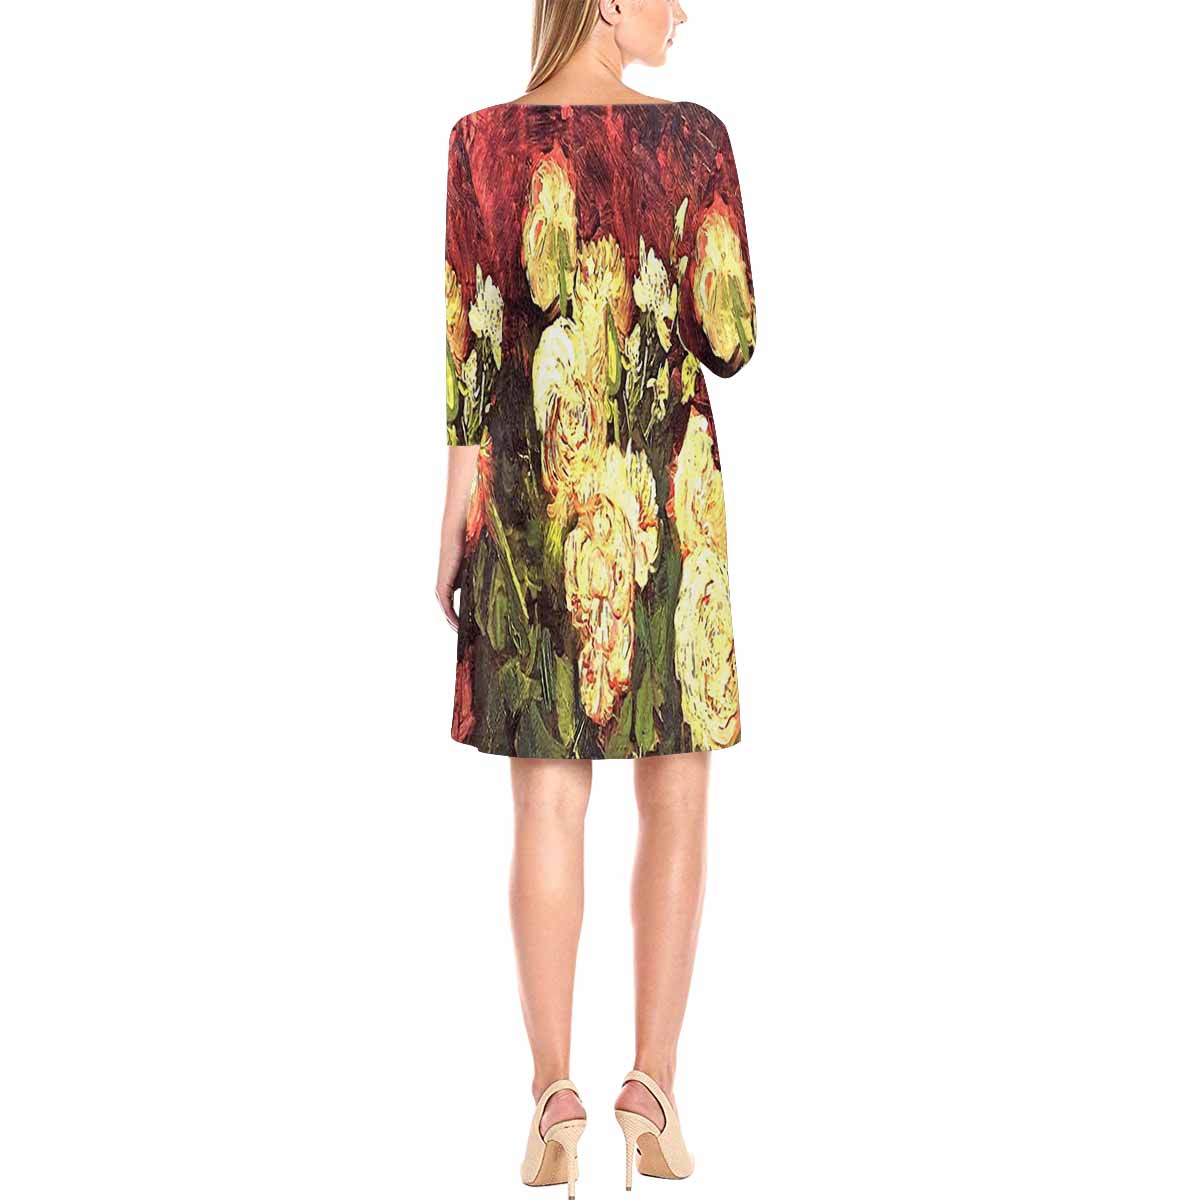 Vintage floral loose dress, model D29532 Design 27